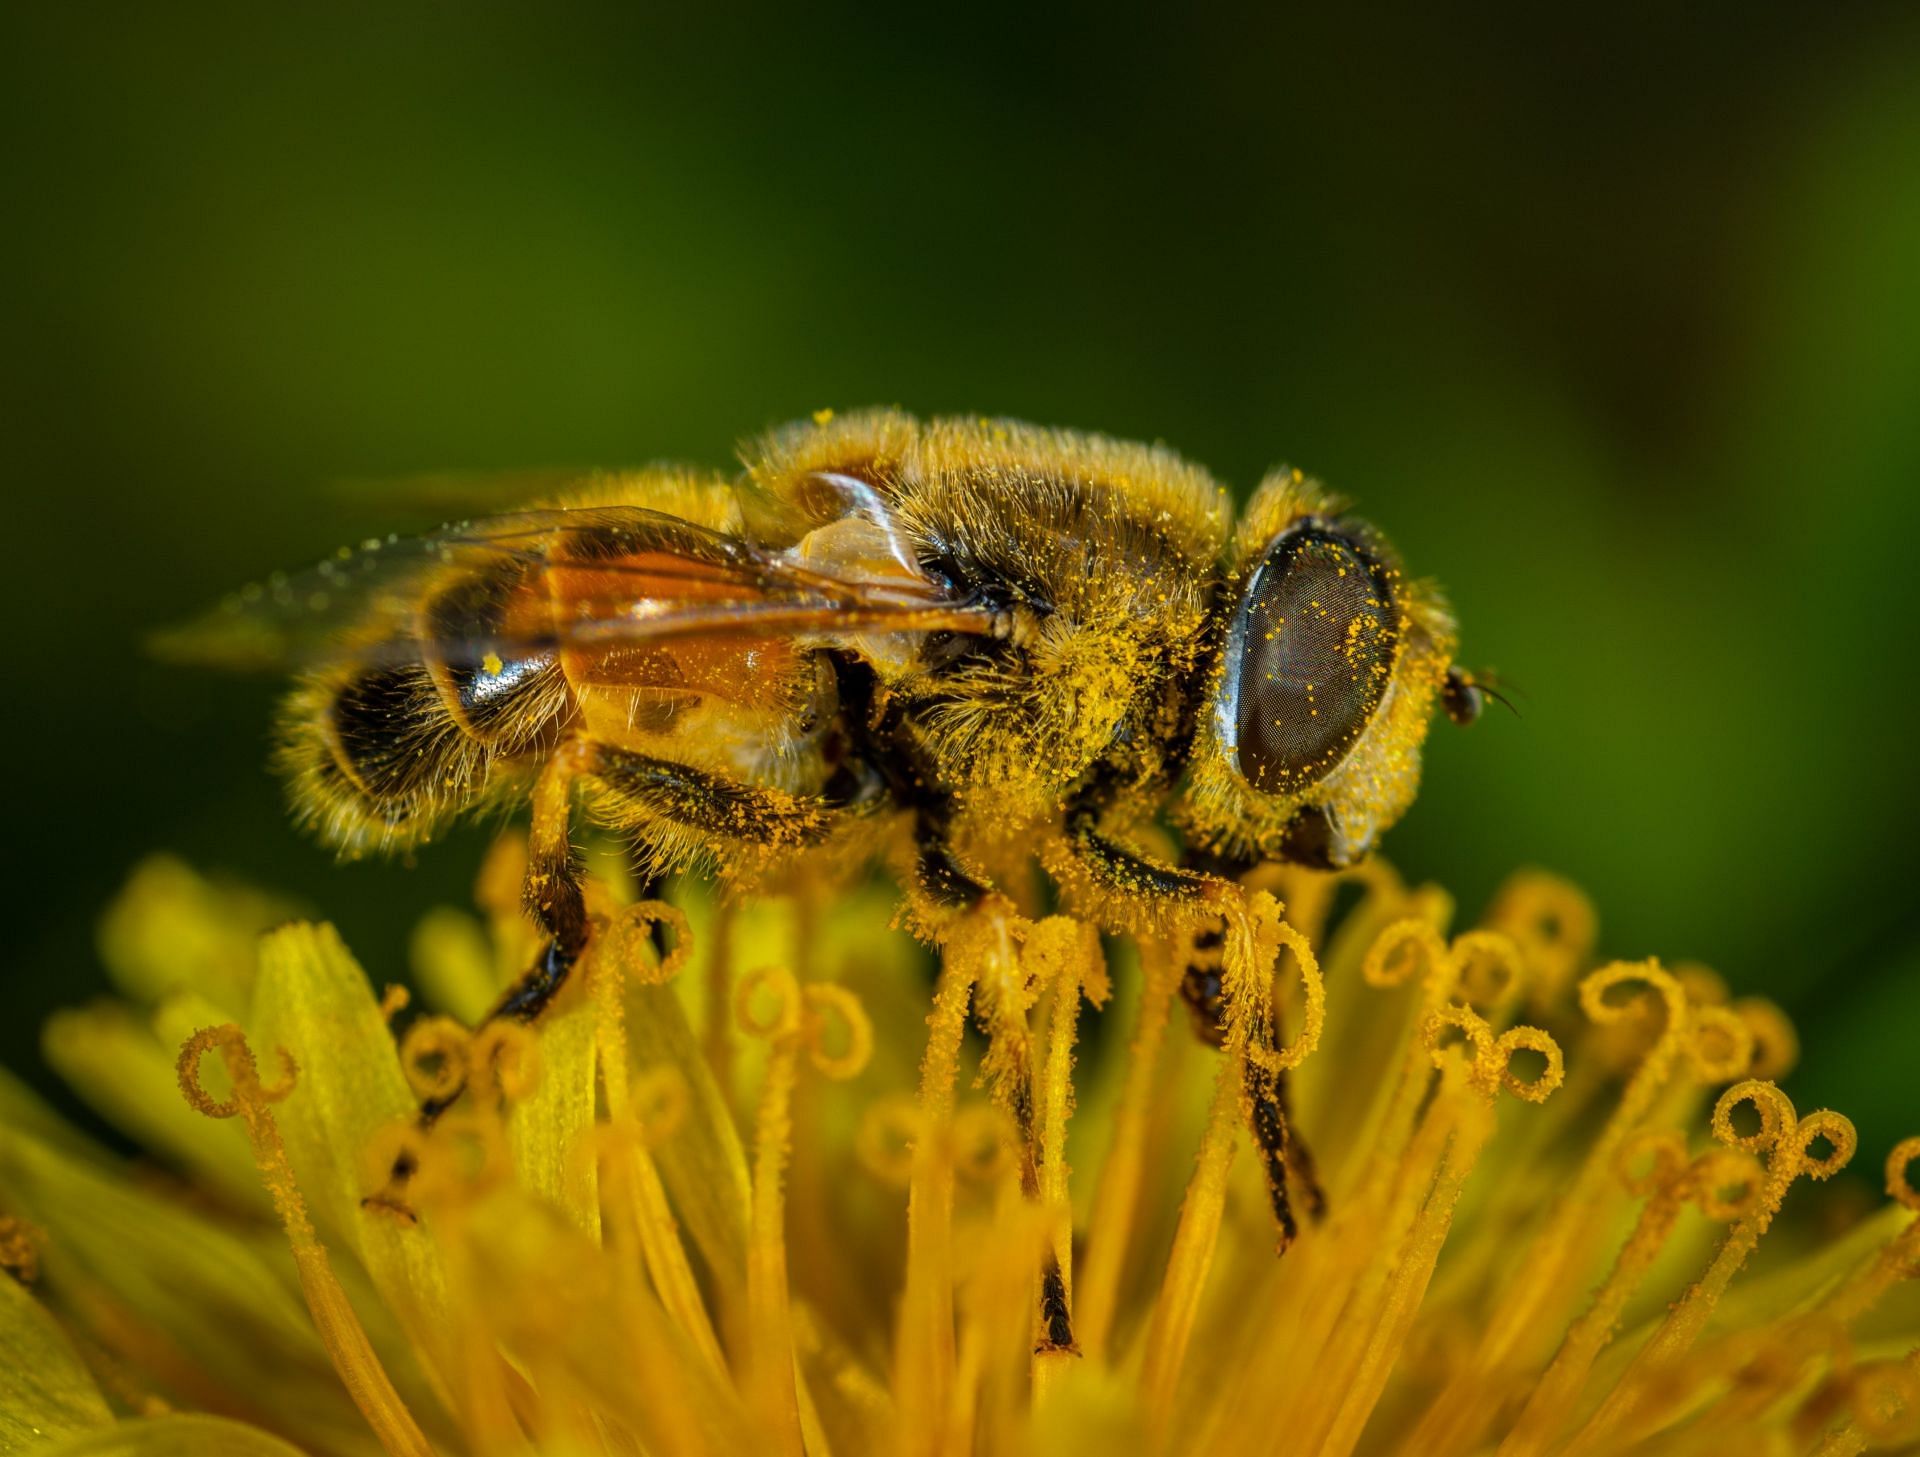 Bee pollens may help in relieving menopausal symptoms. (Image via Pexels/Egor Kamelev)